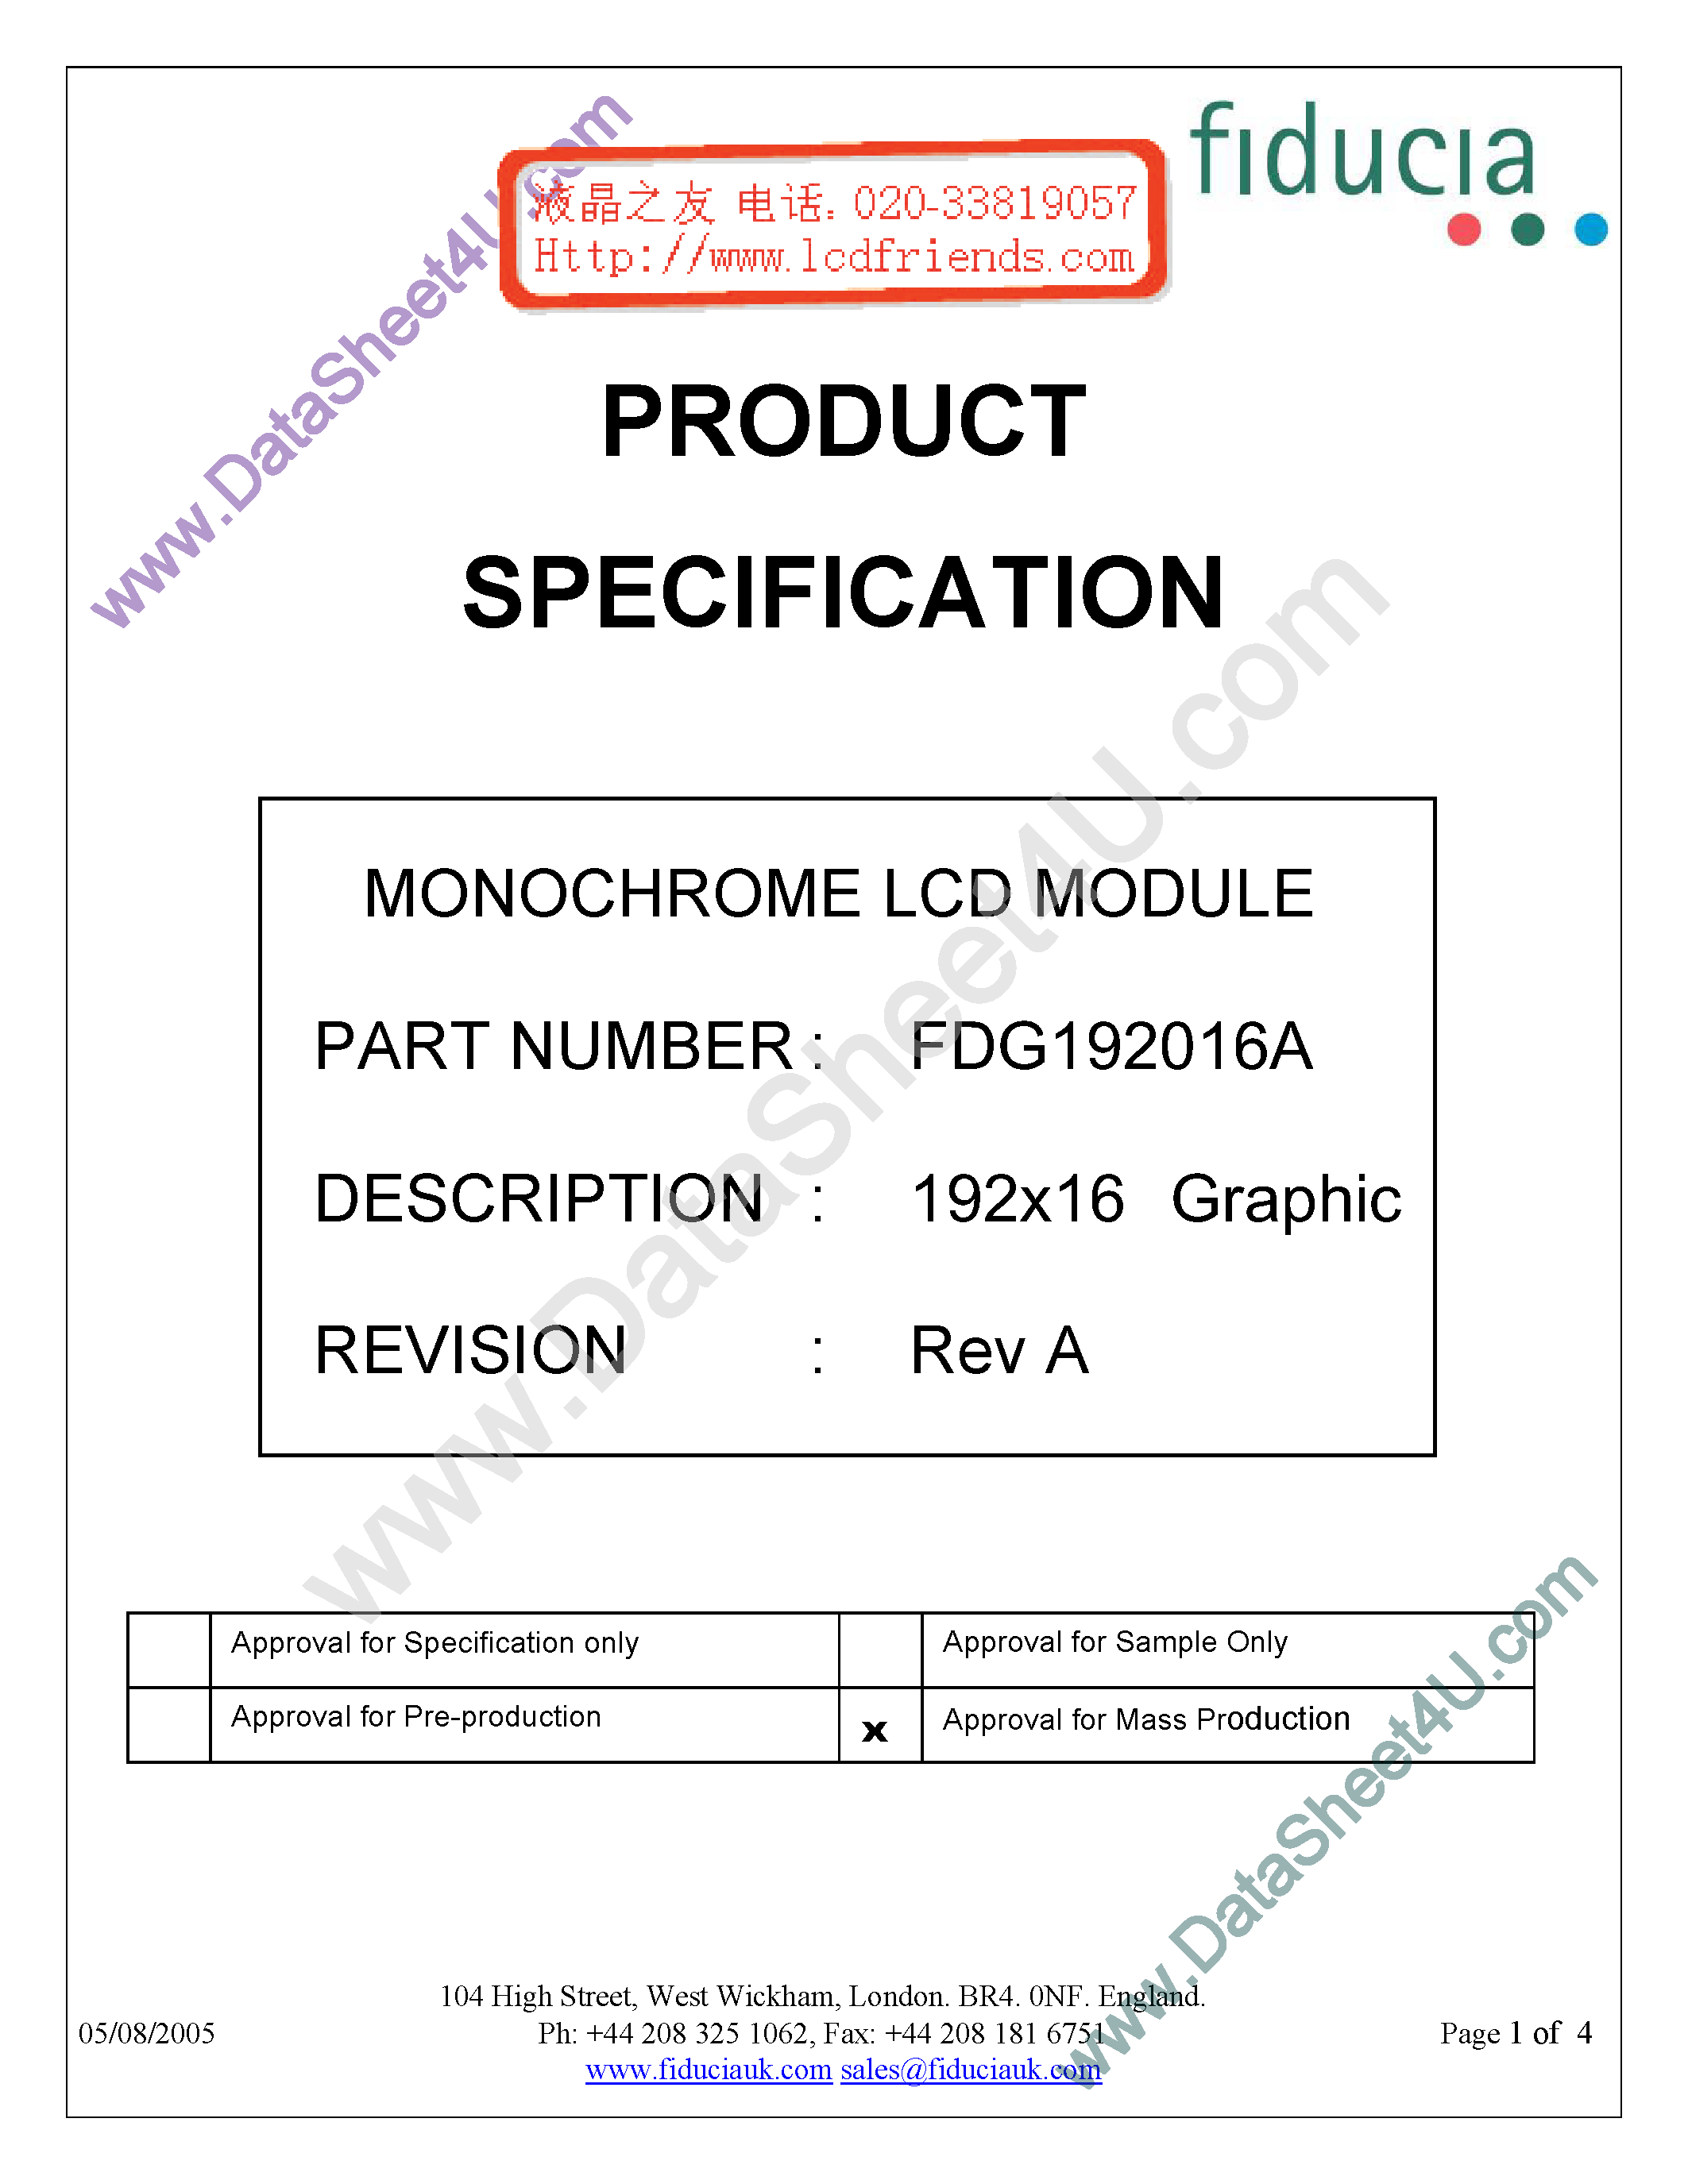 Даташит FDG192016A - Monochrome Lcd Module страница 1